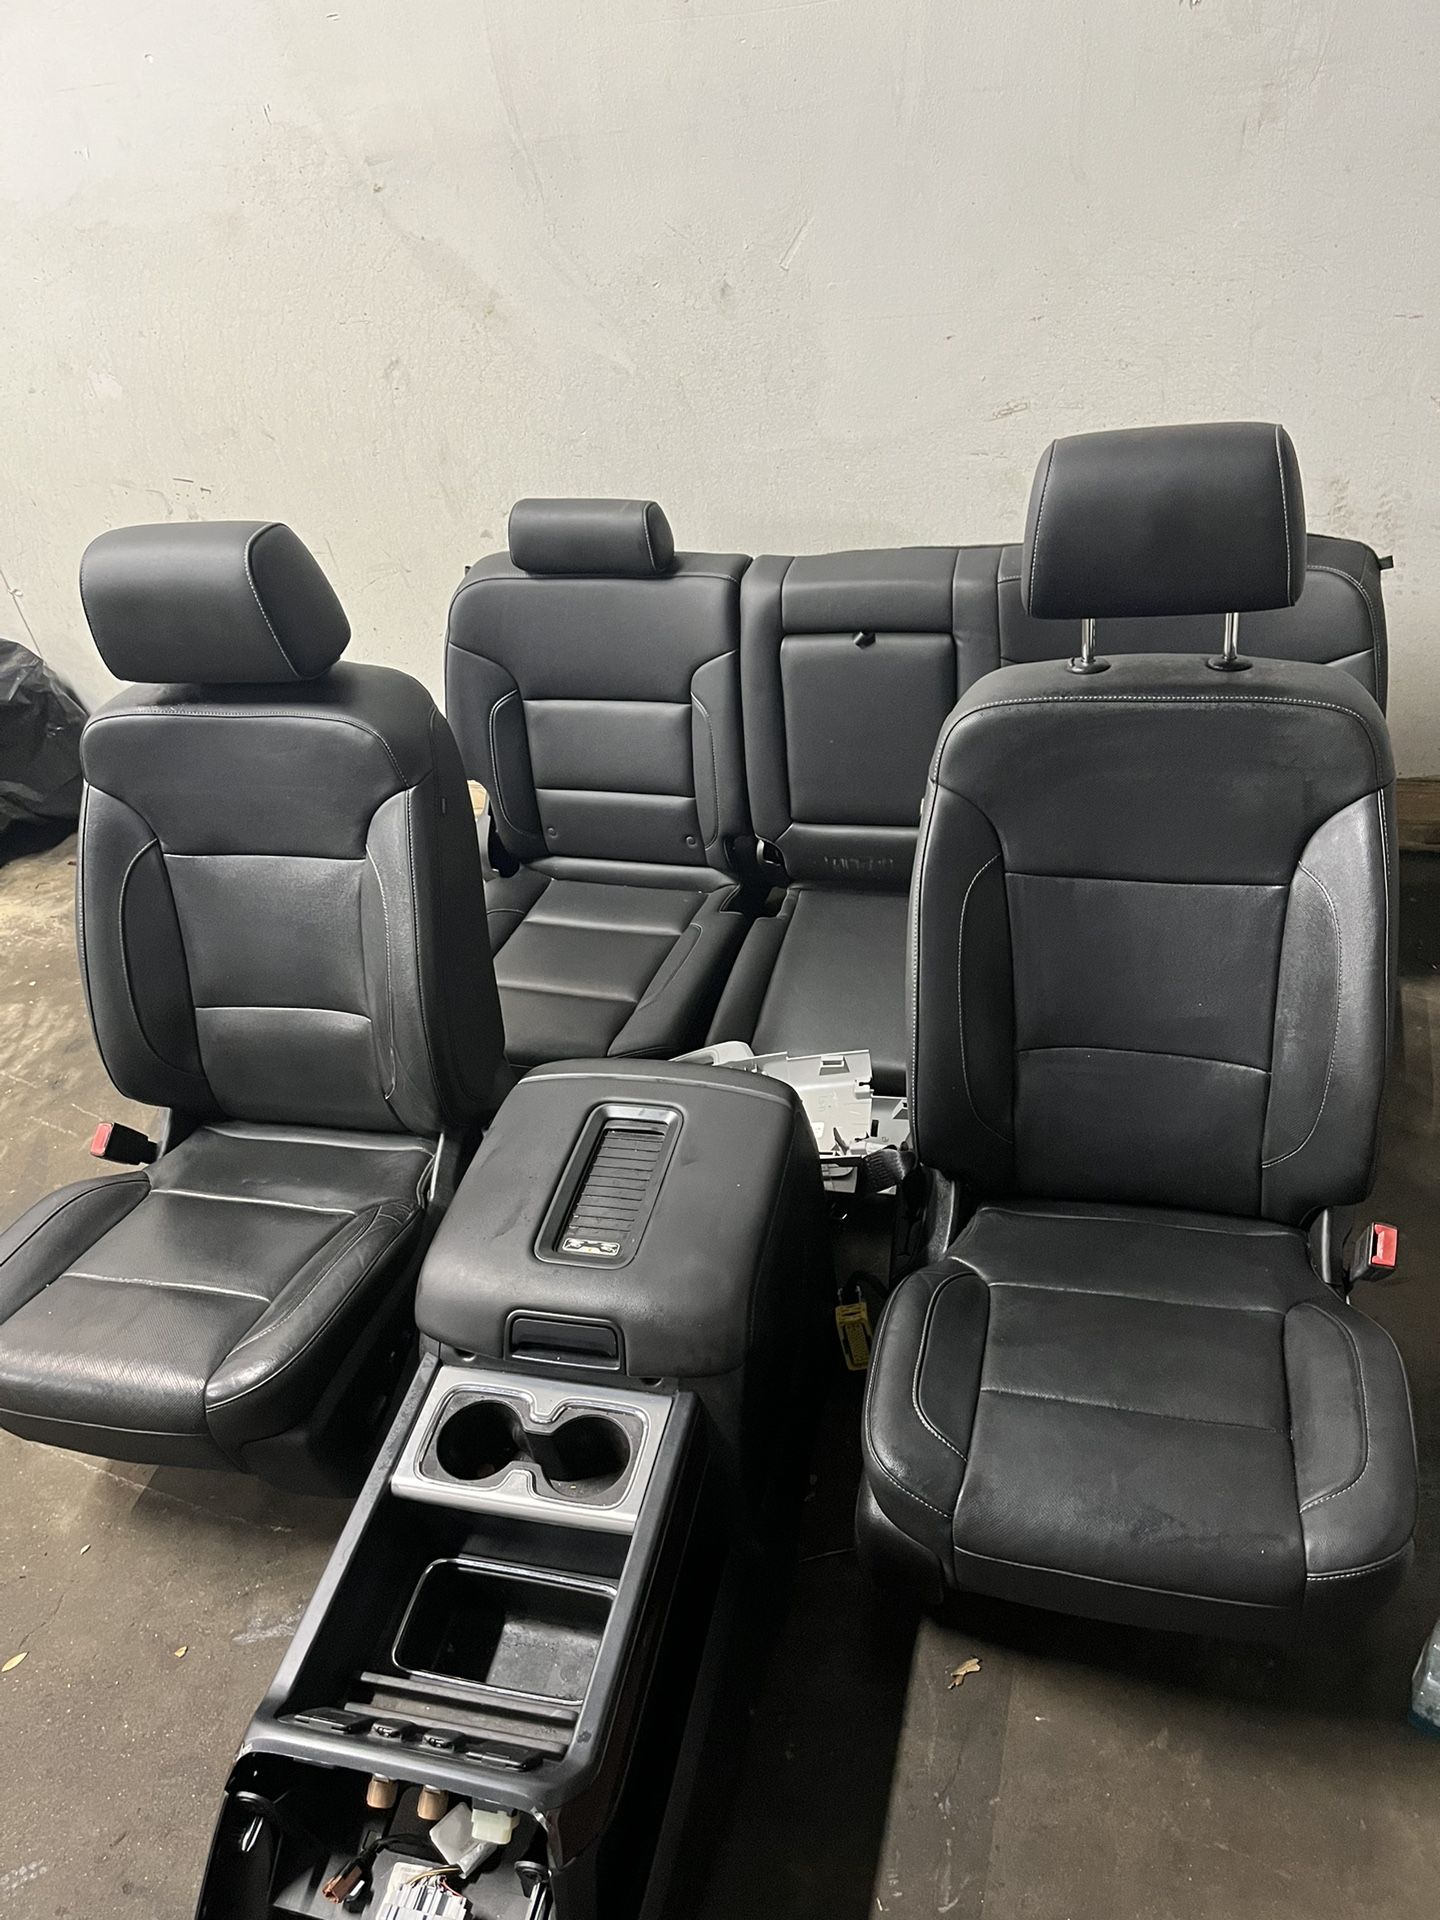 2018 Gmc Sierra 1500 Leather Interior Part